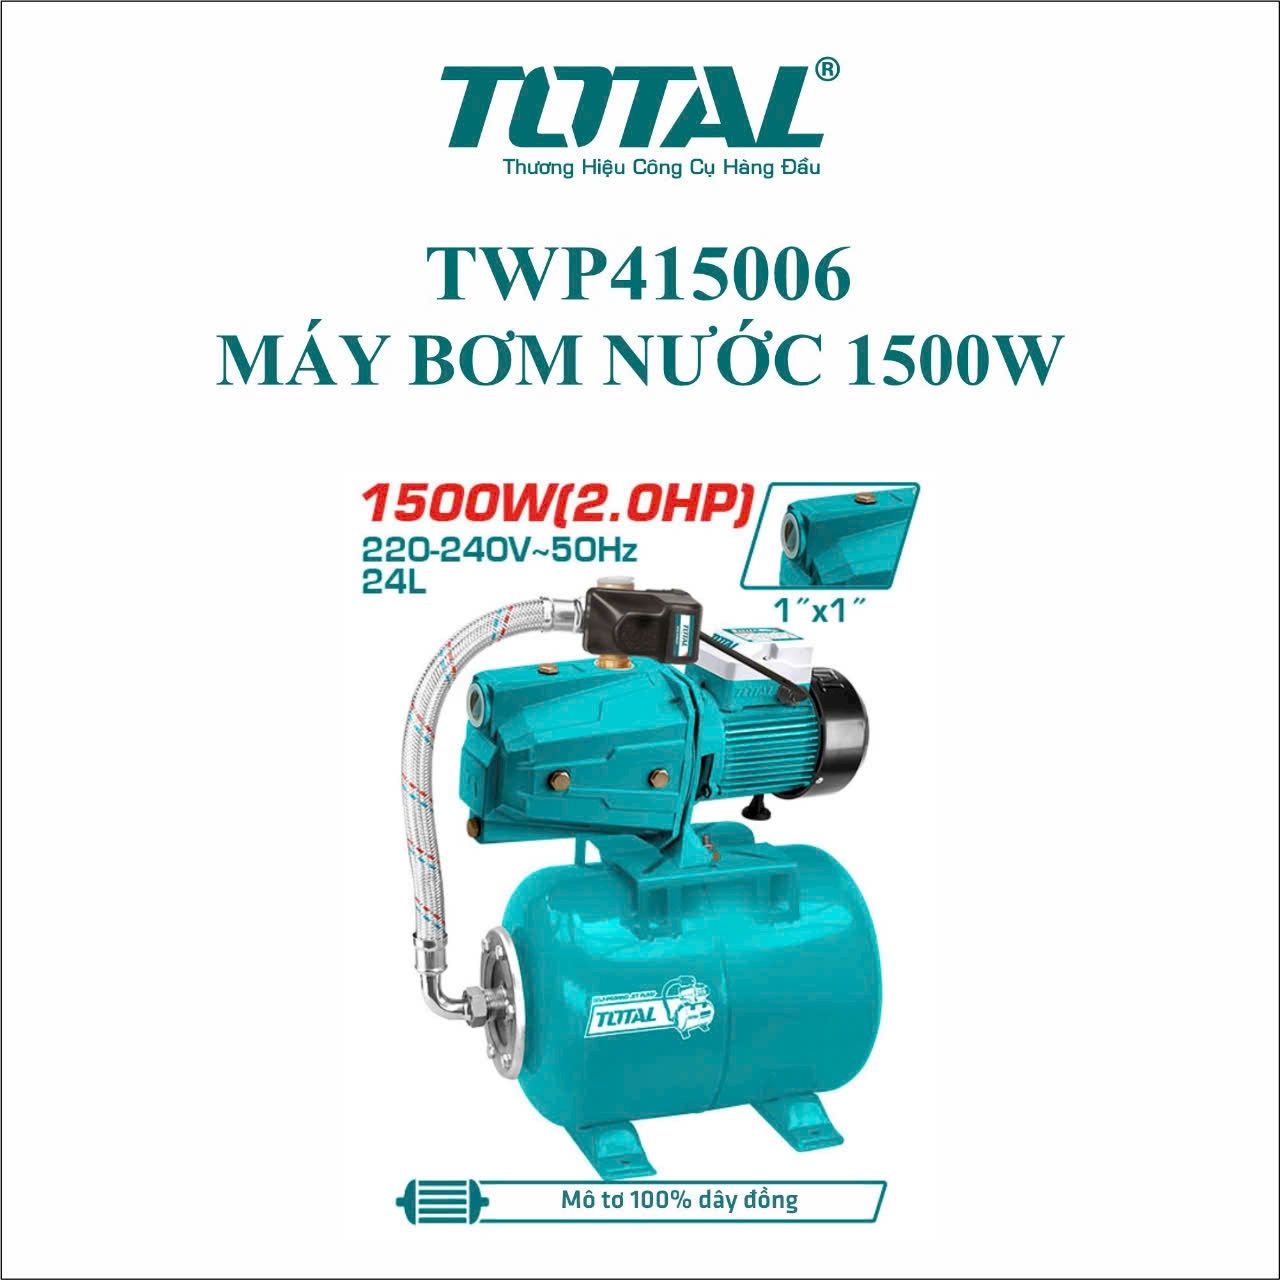  Máy bơm nước 1500W Total TWP415006 